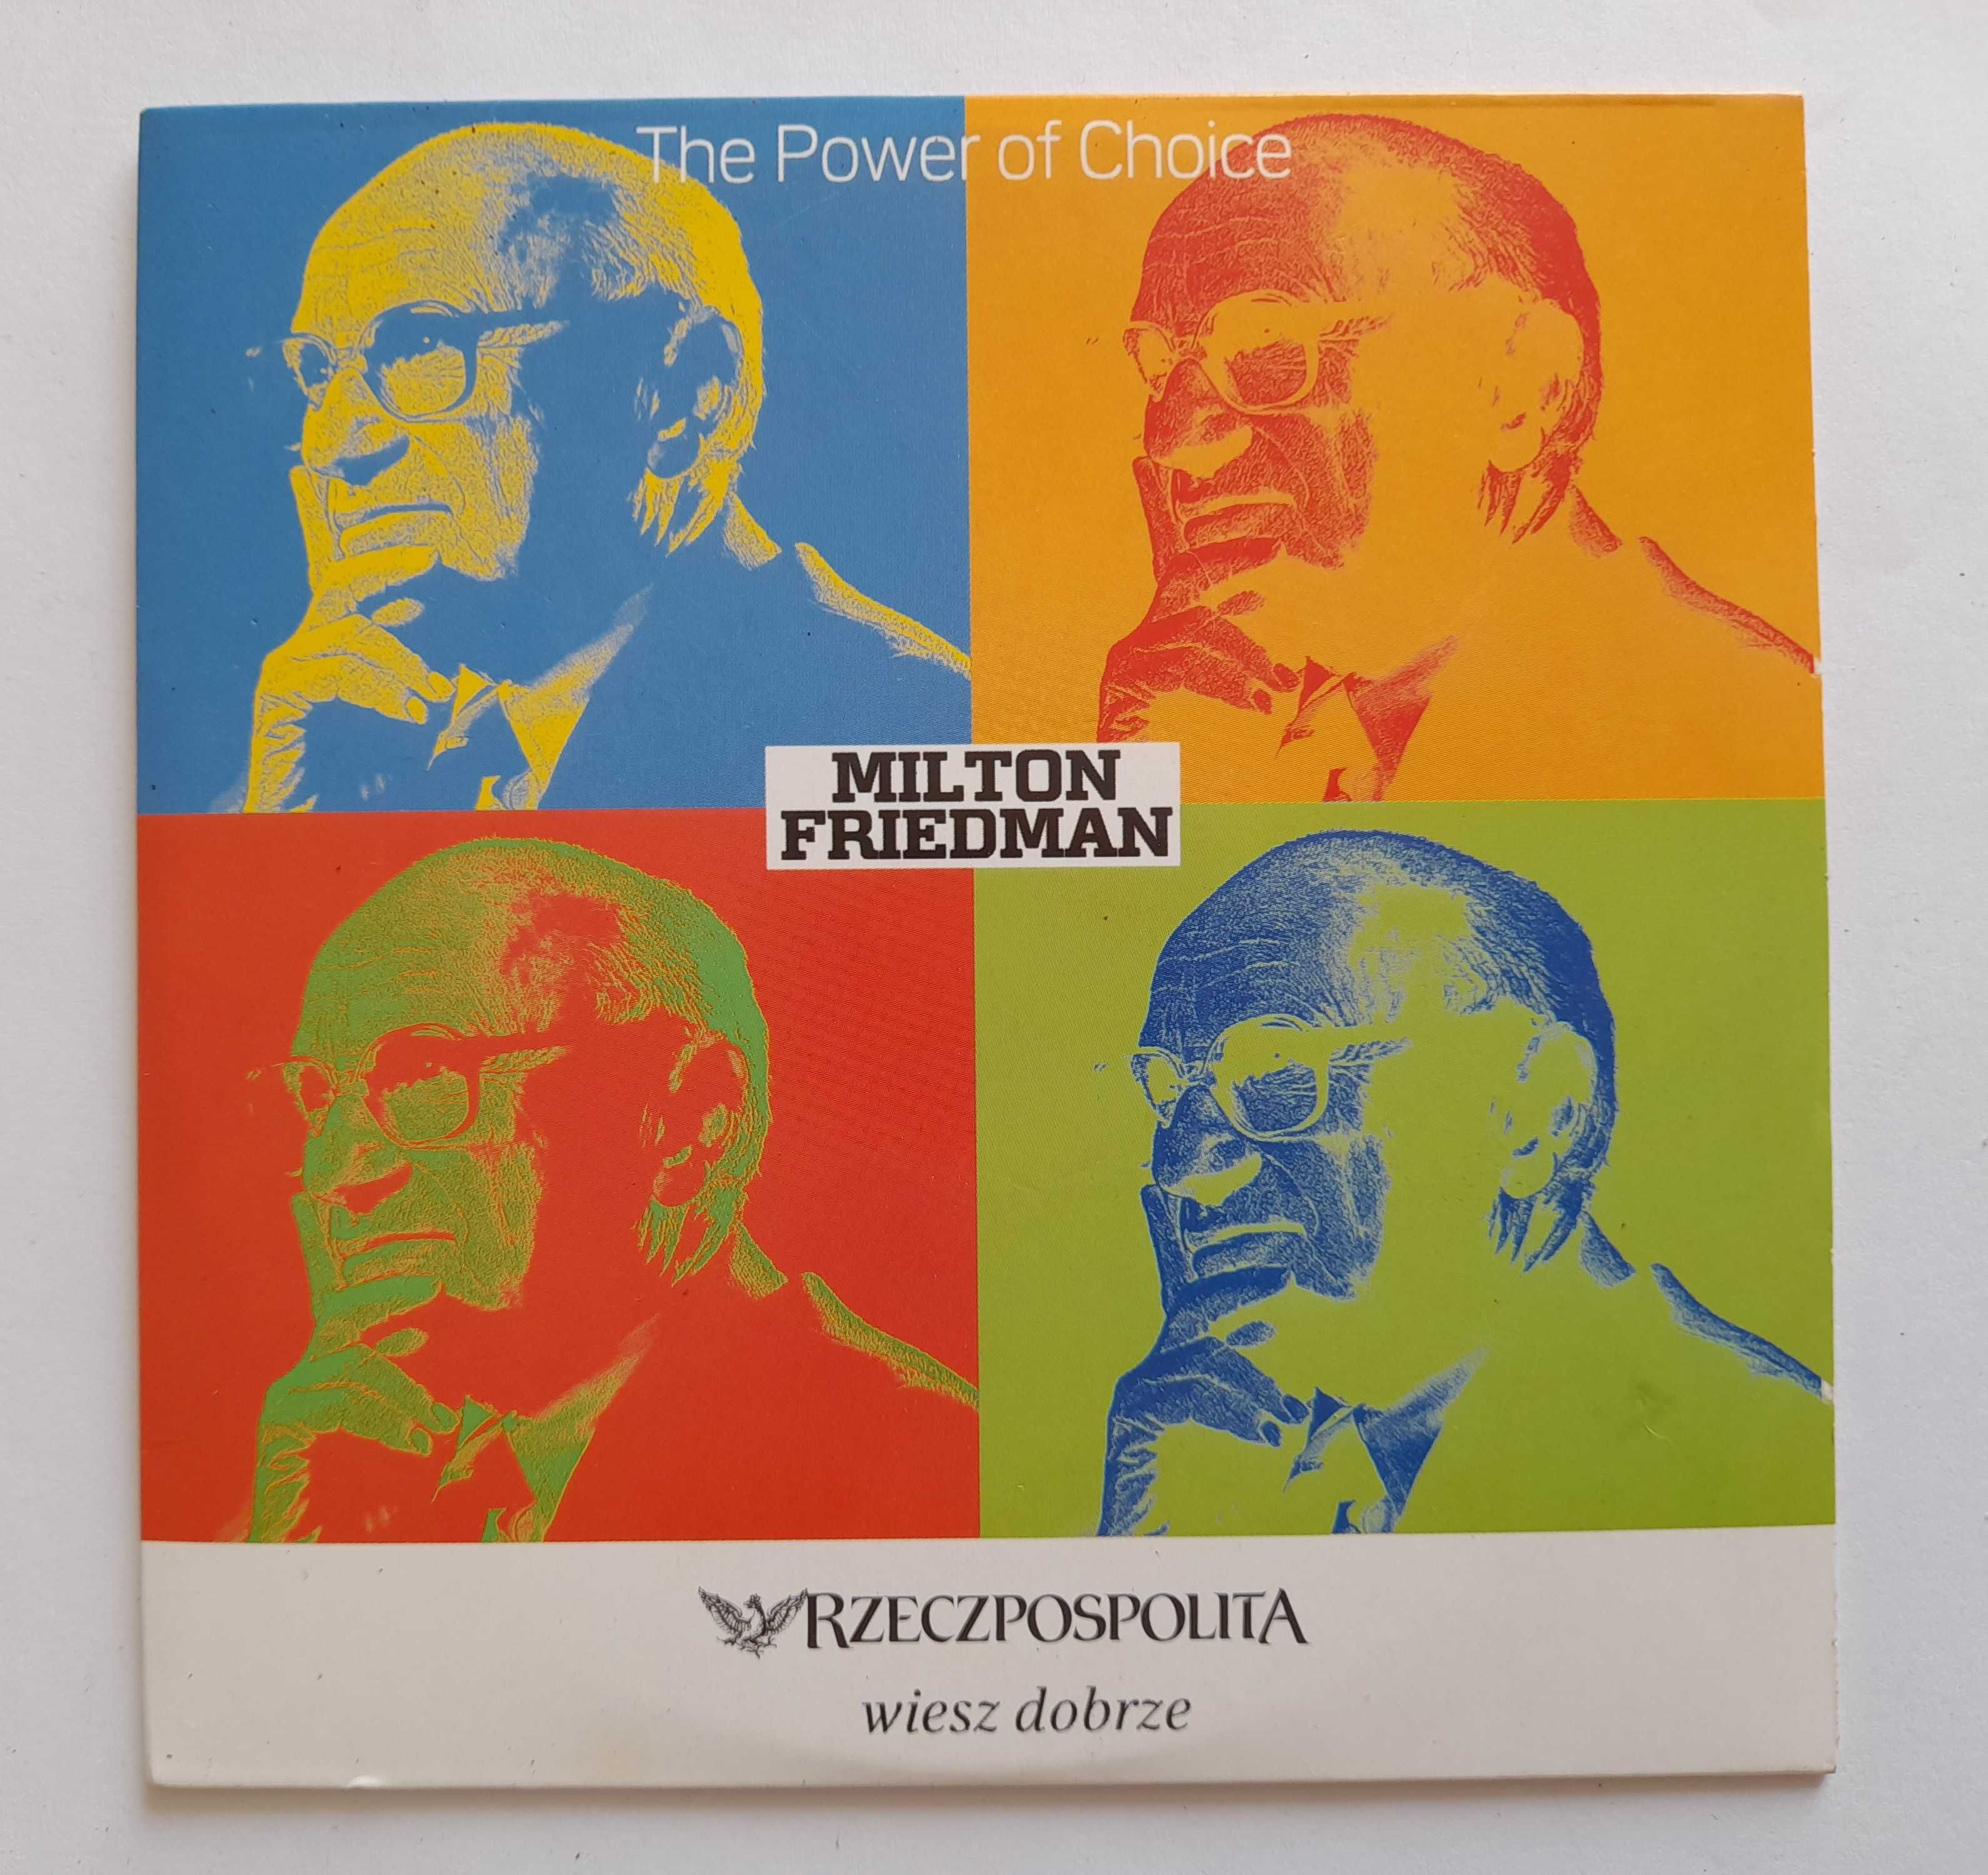 The Power of Choice - Milton Friedman CD-ROM